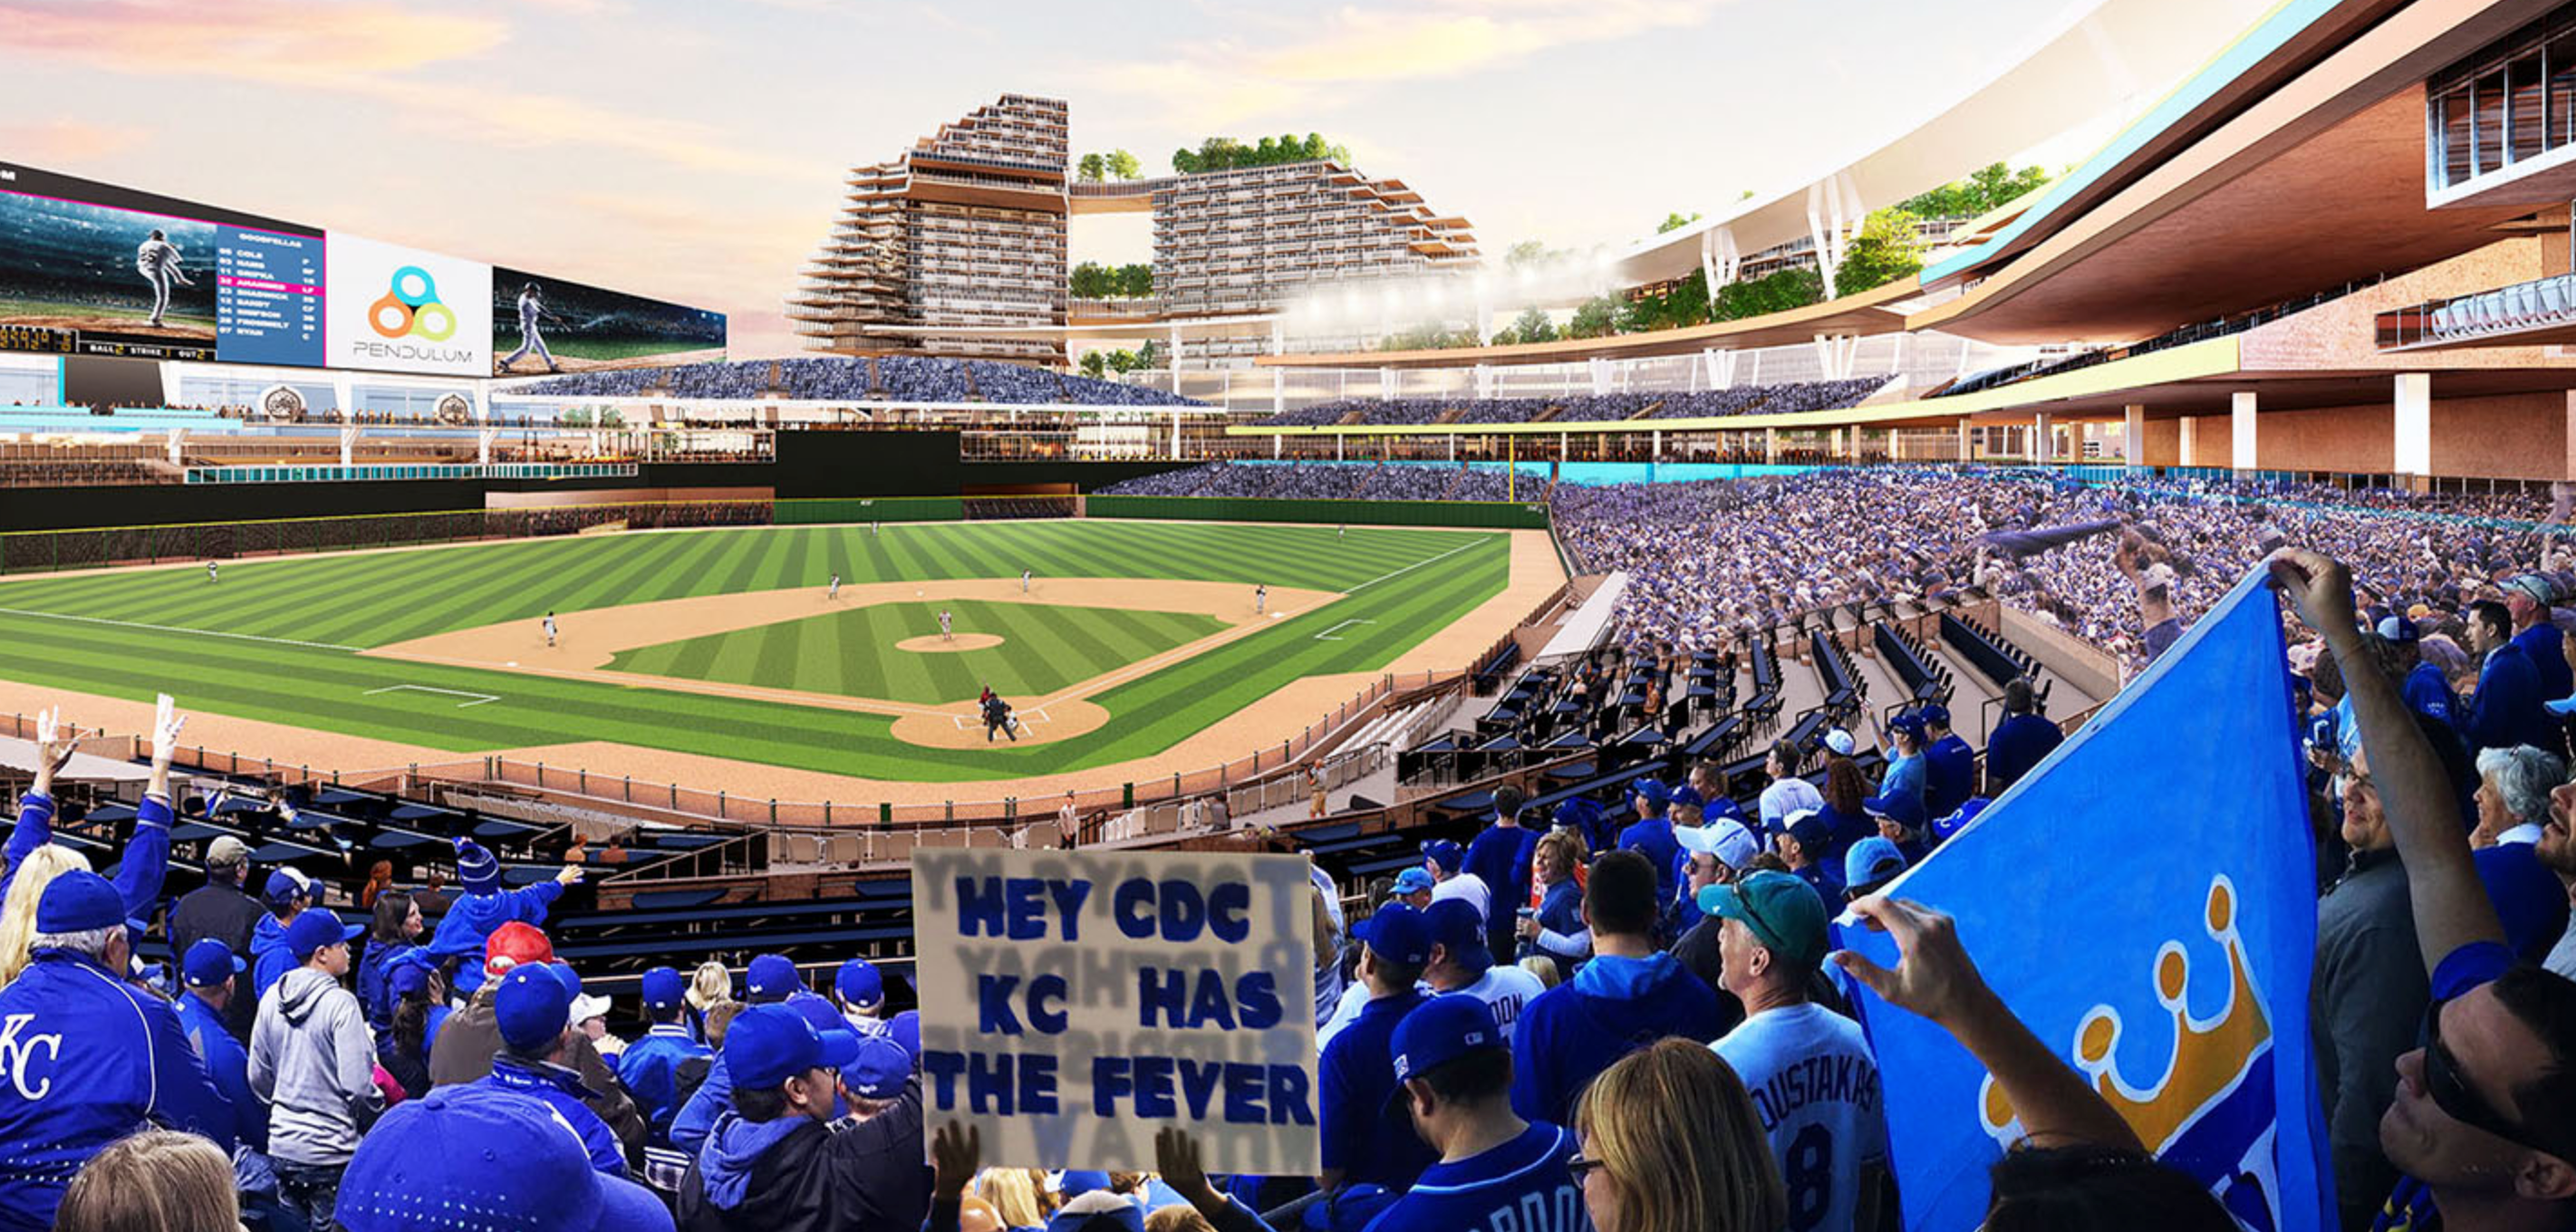 Concept renderings for Kansas City Royals ballpark revealed